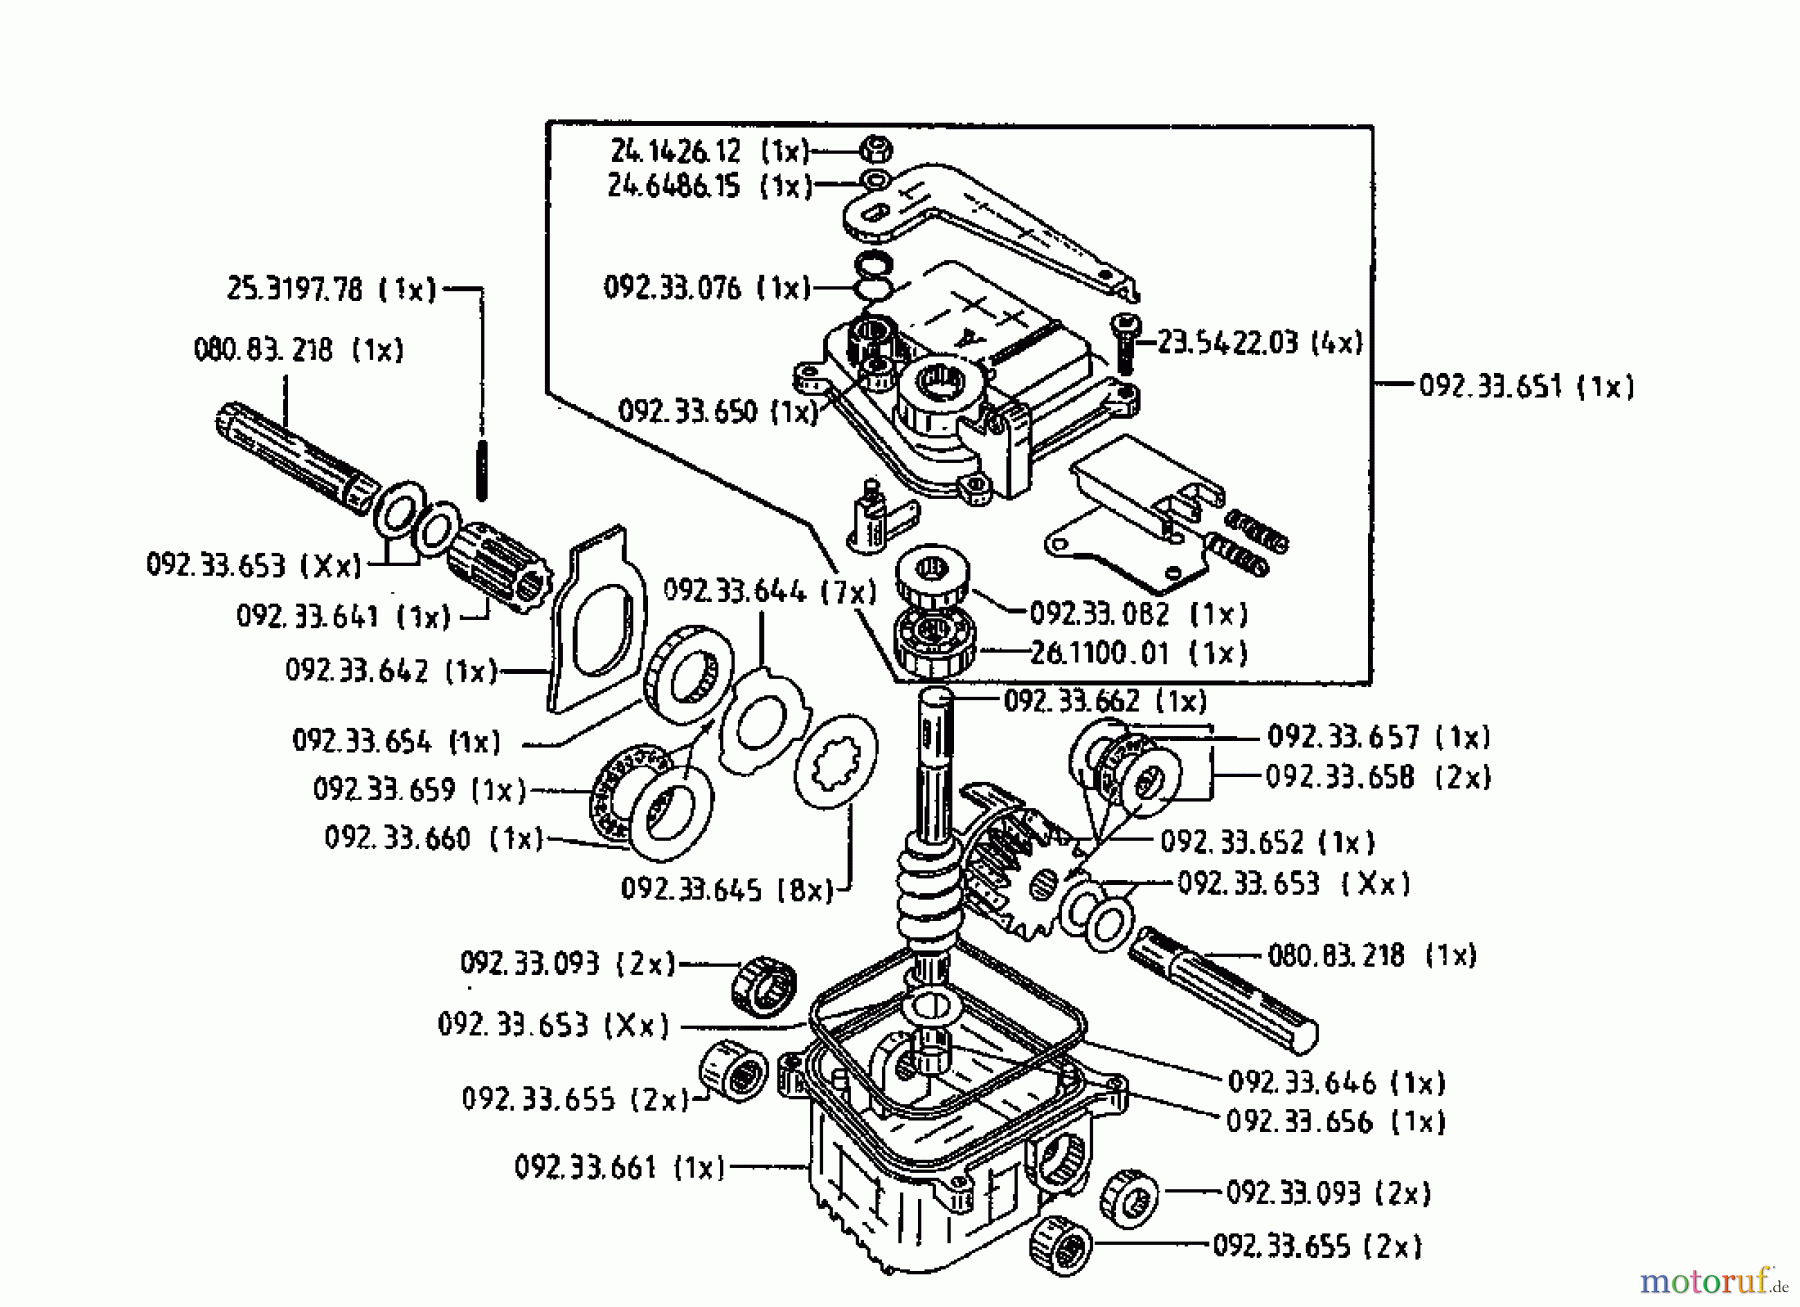  Gutbrod Cutter bar mower BM 700 07510.04  (1995) Gearbox